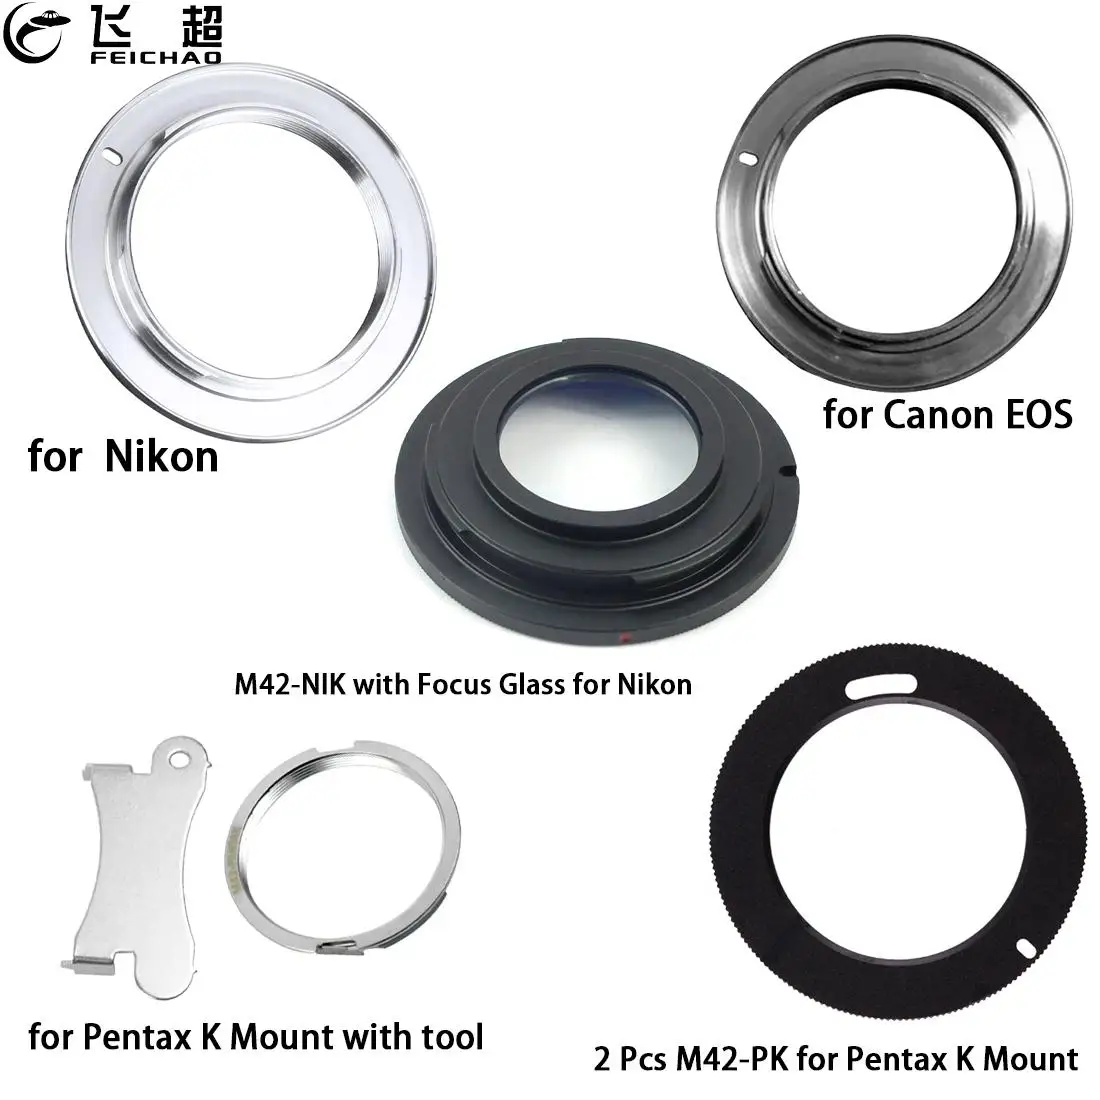 

Feichao Metal Lens Adapter Screw Mount Lens Ring for Canon EOS M42-NIK M42-EOS for Nikon M42-PK for Pentax PK DSLR SLR Camera